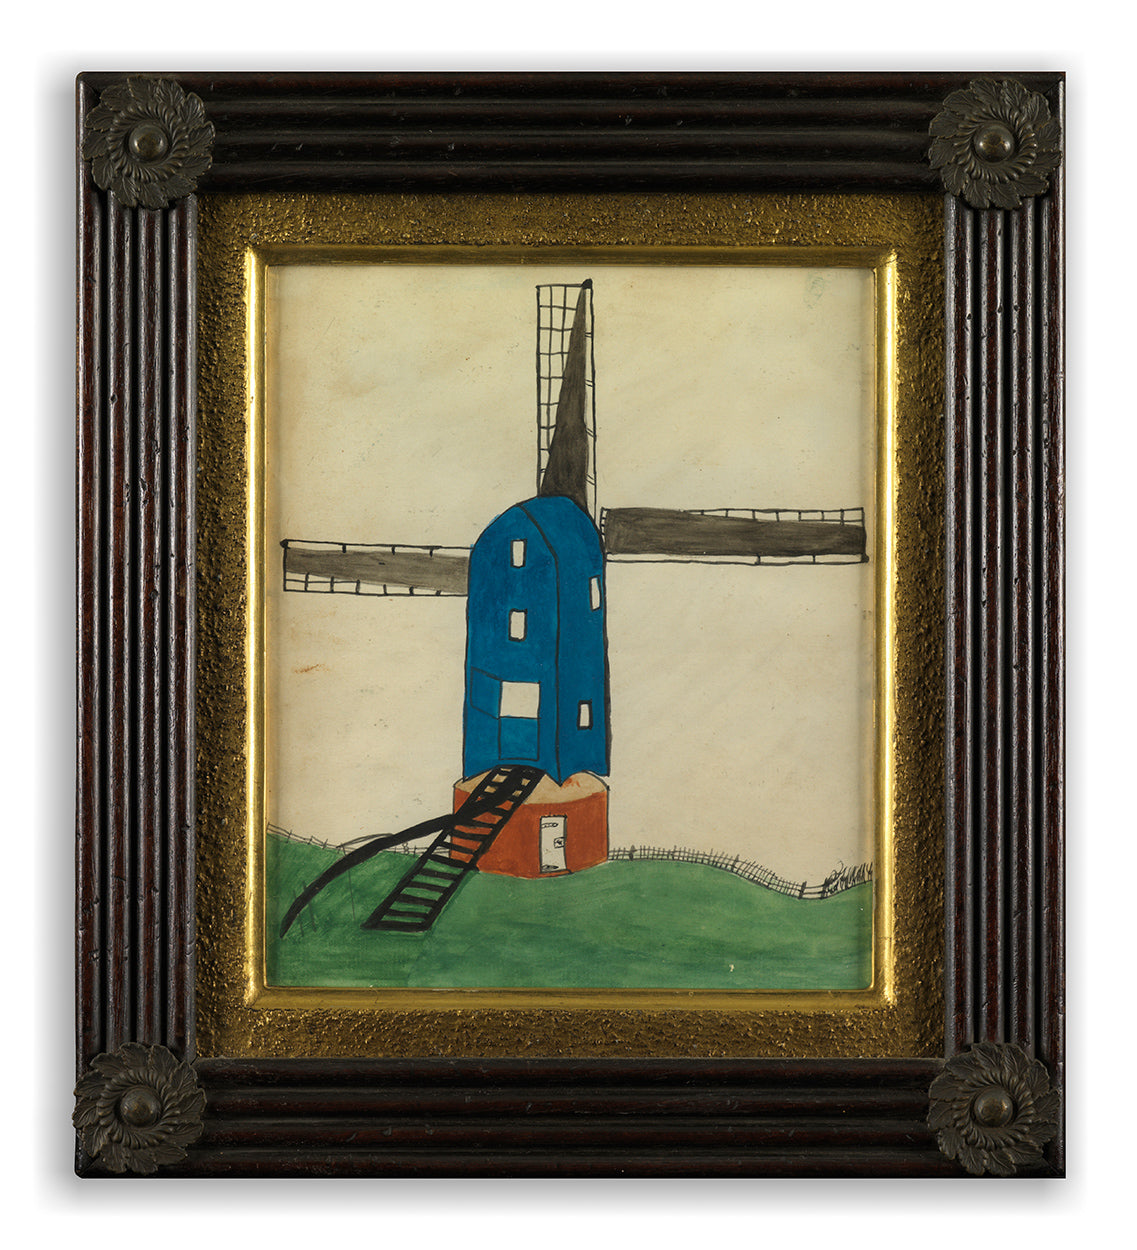 Engaging Naïve School Study of a Windmill